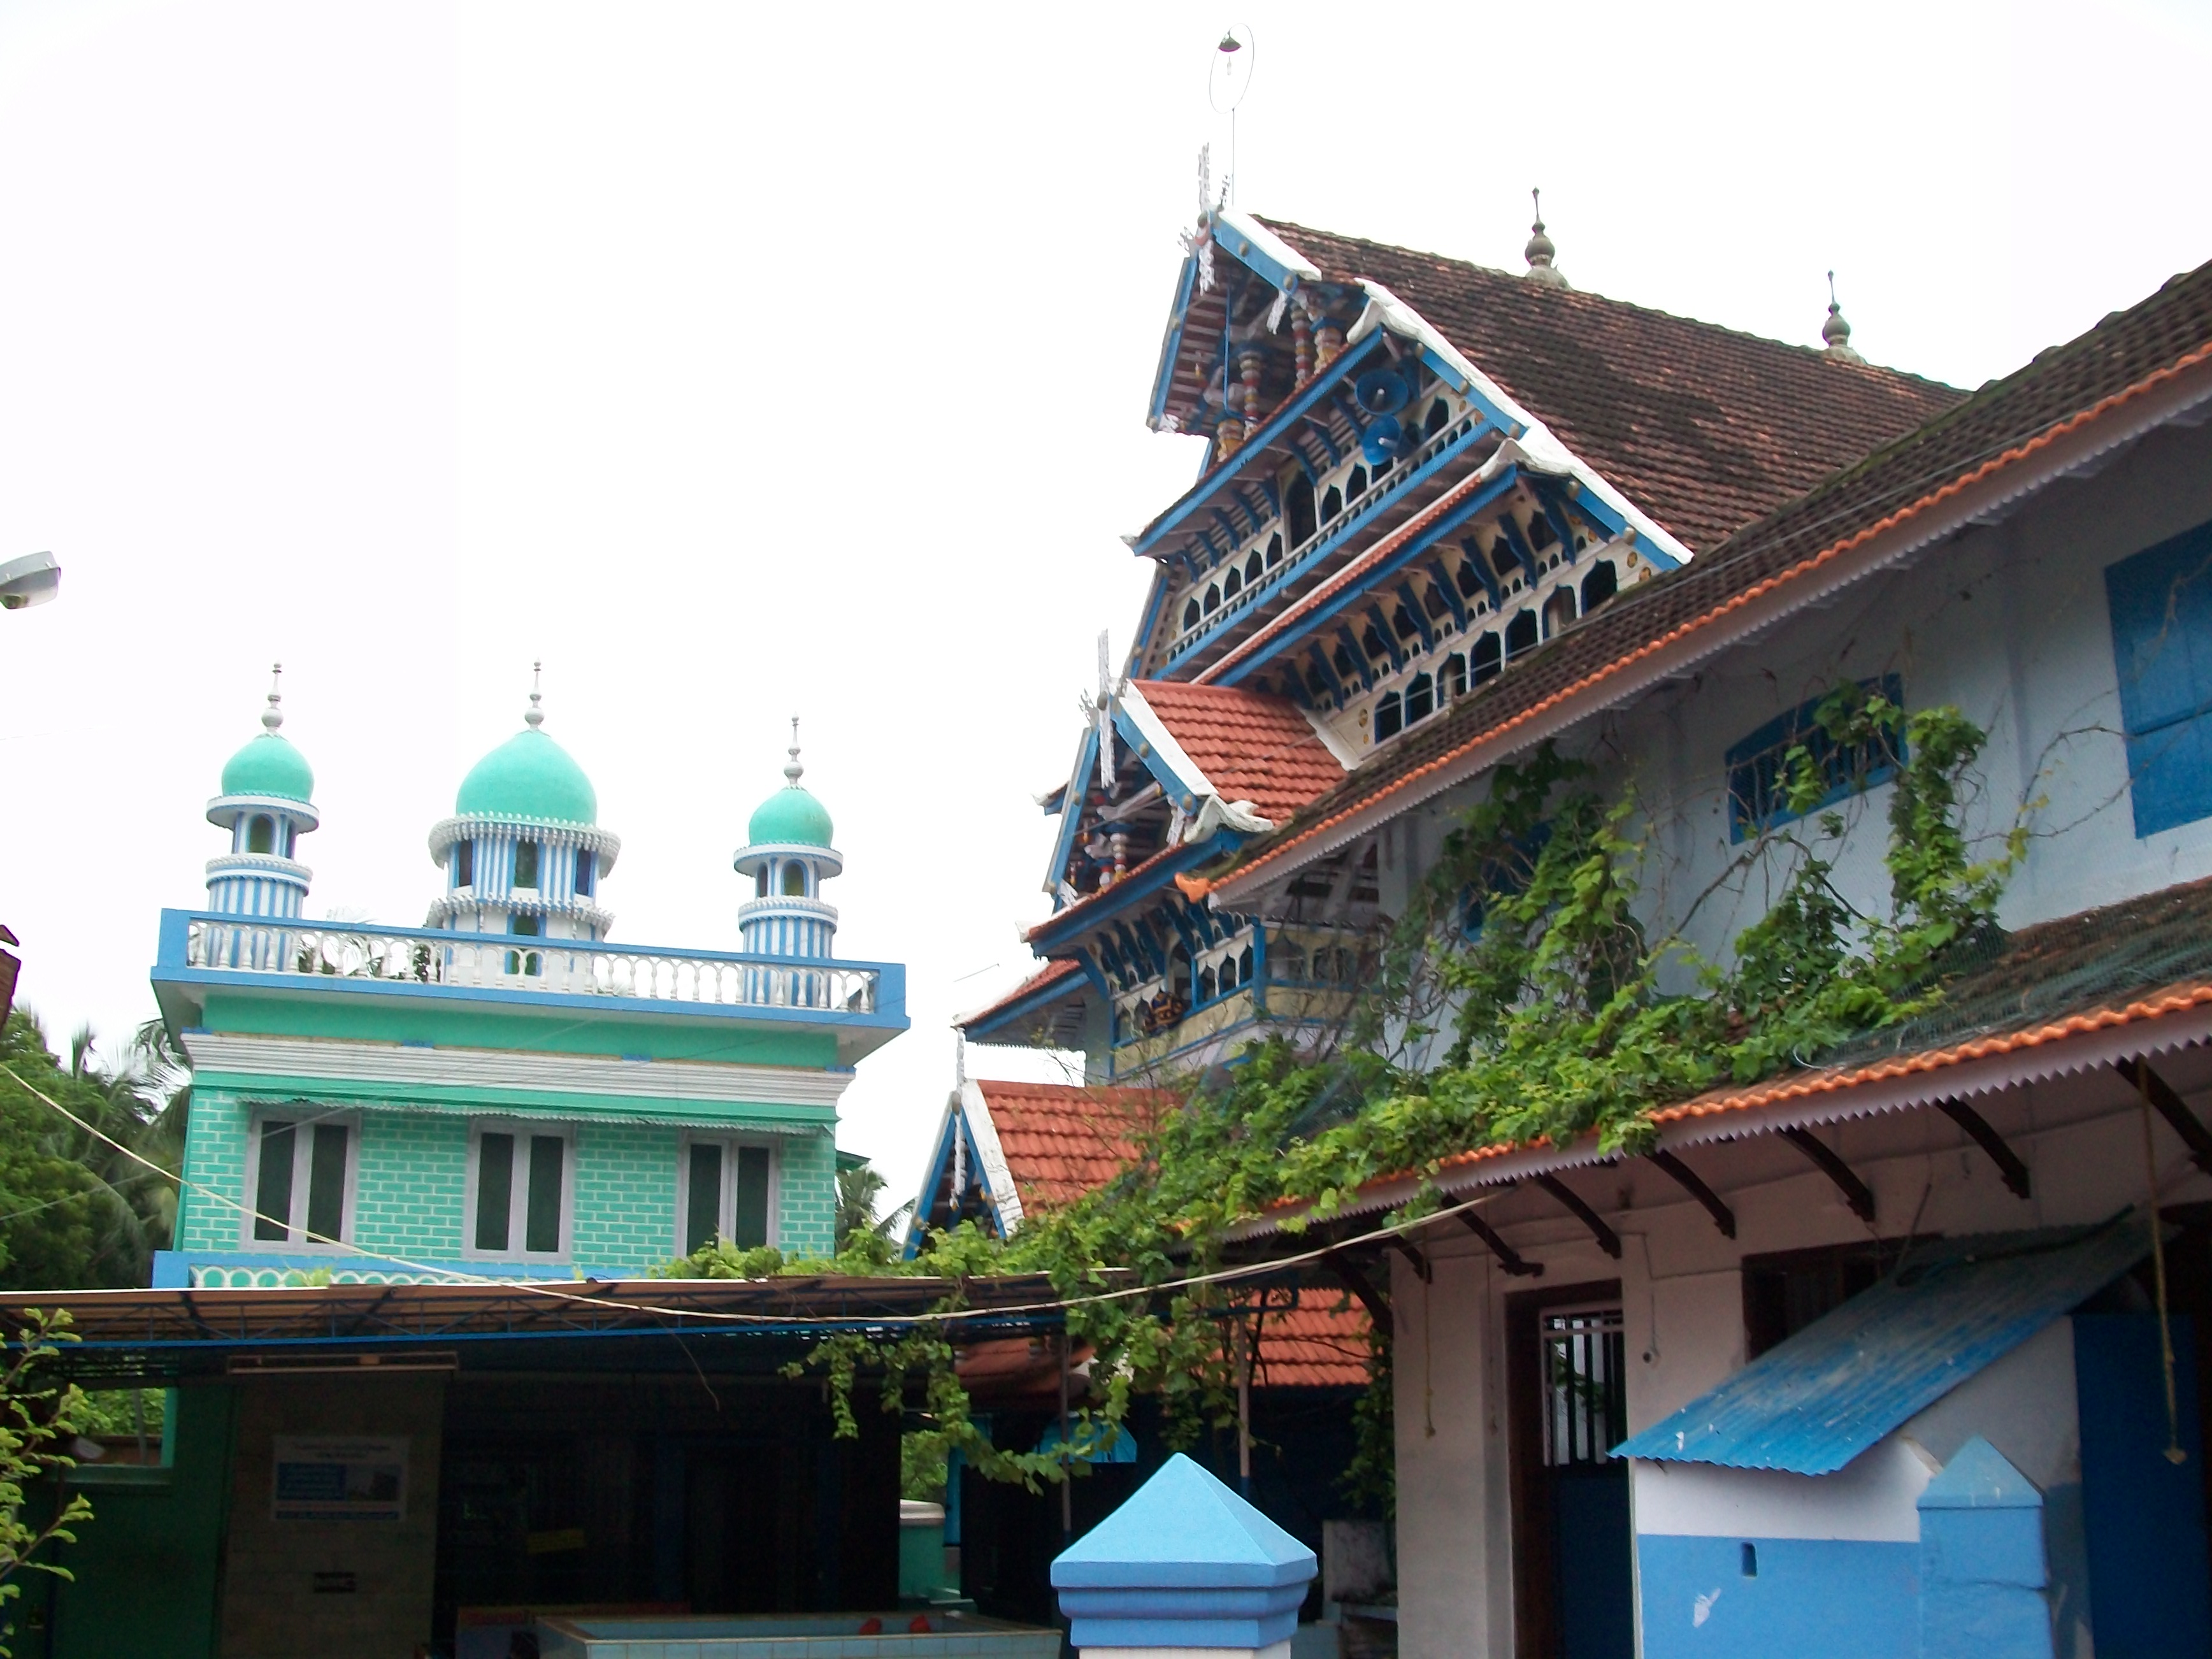 Ponnani Juma Masjid Malappuram - Makkah of Kerala Muslims 